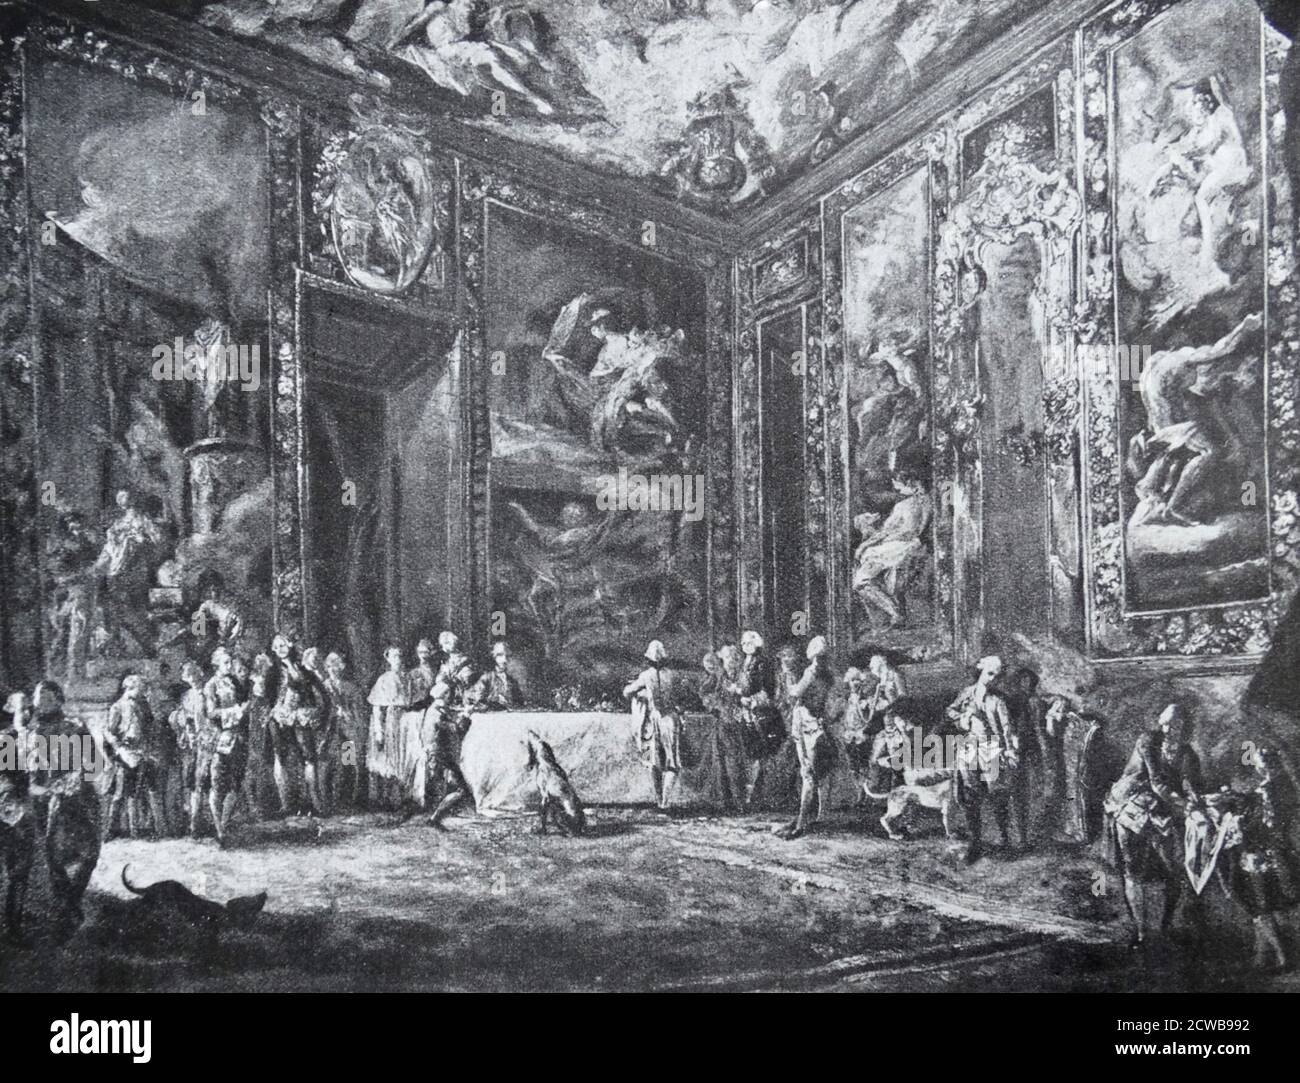 Dipinto intitolato 'Carlos III mangiare davanti alla corte' di Luis Paret y Alcazar. Luis Paret y Alcazar (1746-1799) pittore spagnolo del tardo Barocco o rococo. Foto Stock